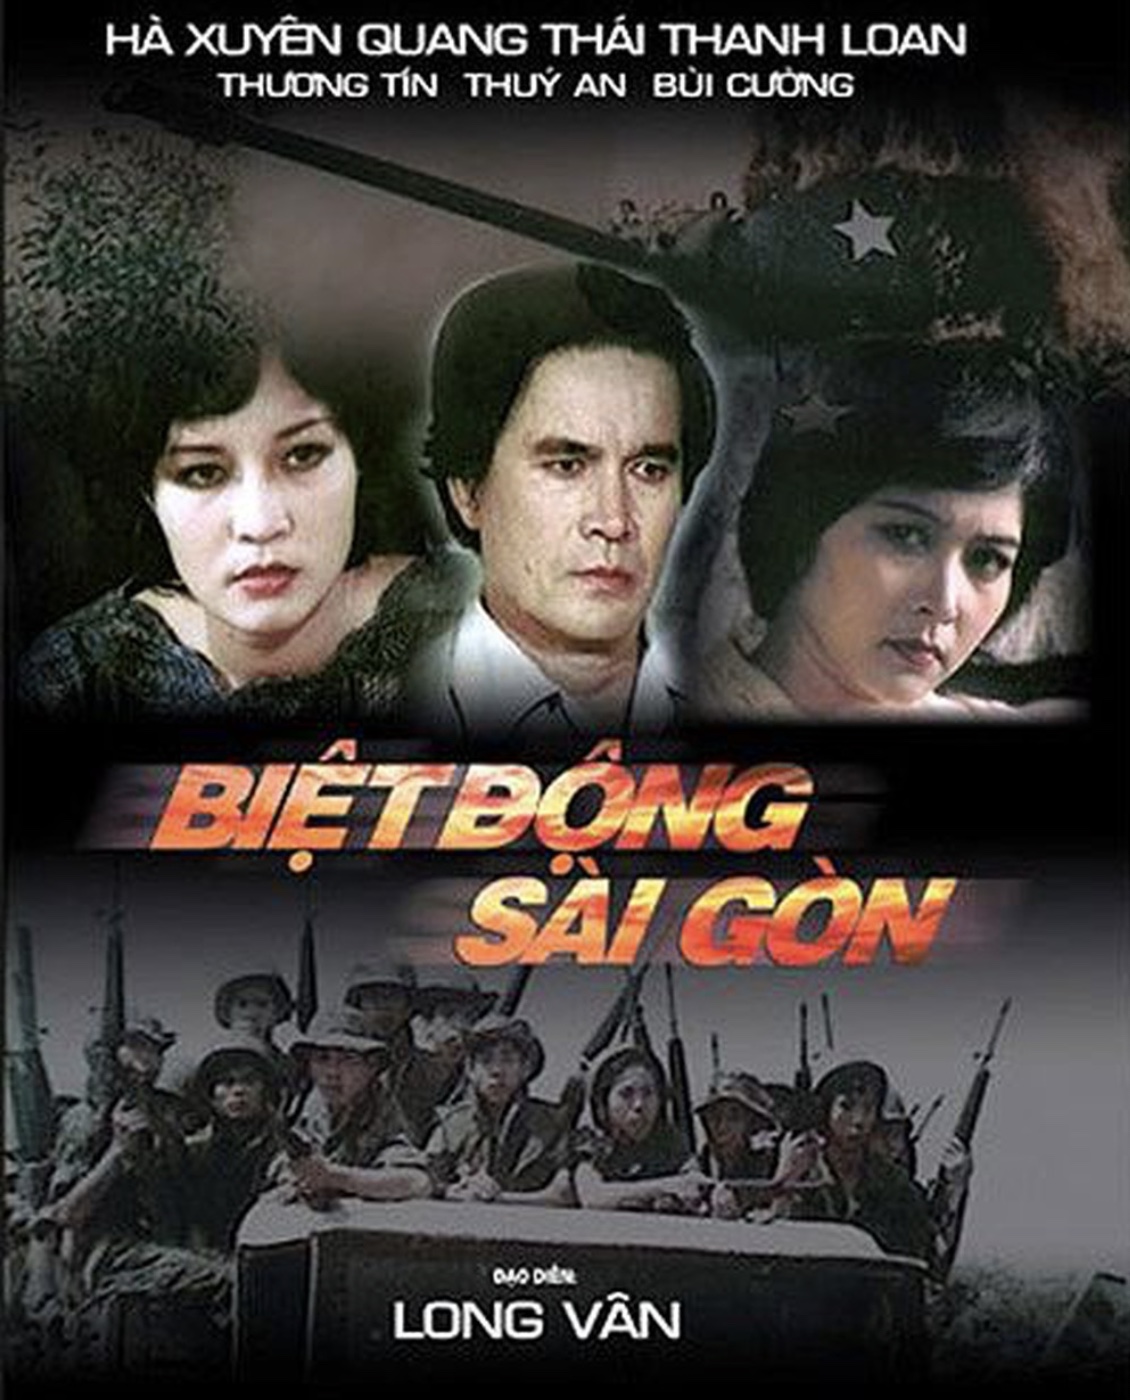 Nghệ sĩ Long Vân - đạo diễn bộ phim huyền thoại &quot;Biệt động Sài Gòn&quot; qua đời  - Ảnh 2.